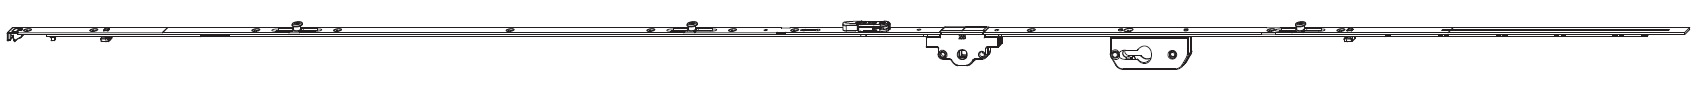 MAICO -  Cremonese BILICO bilico verticale altezza maniglia fissa con foro cilindro e con dss - gr / dim. 2096,5 - 2200 - entrata 40 - alt. man. 1050 - lbb/hbb 1951 - 2200